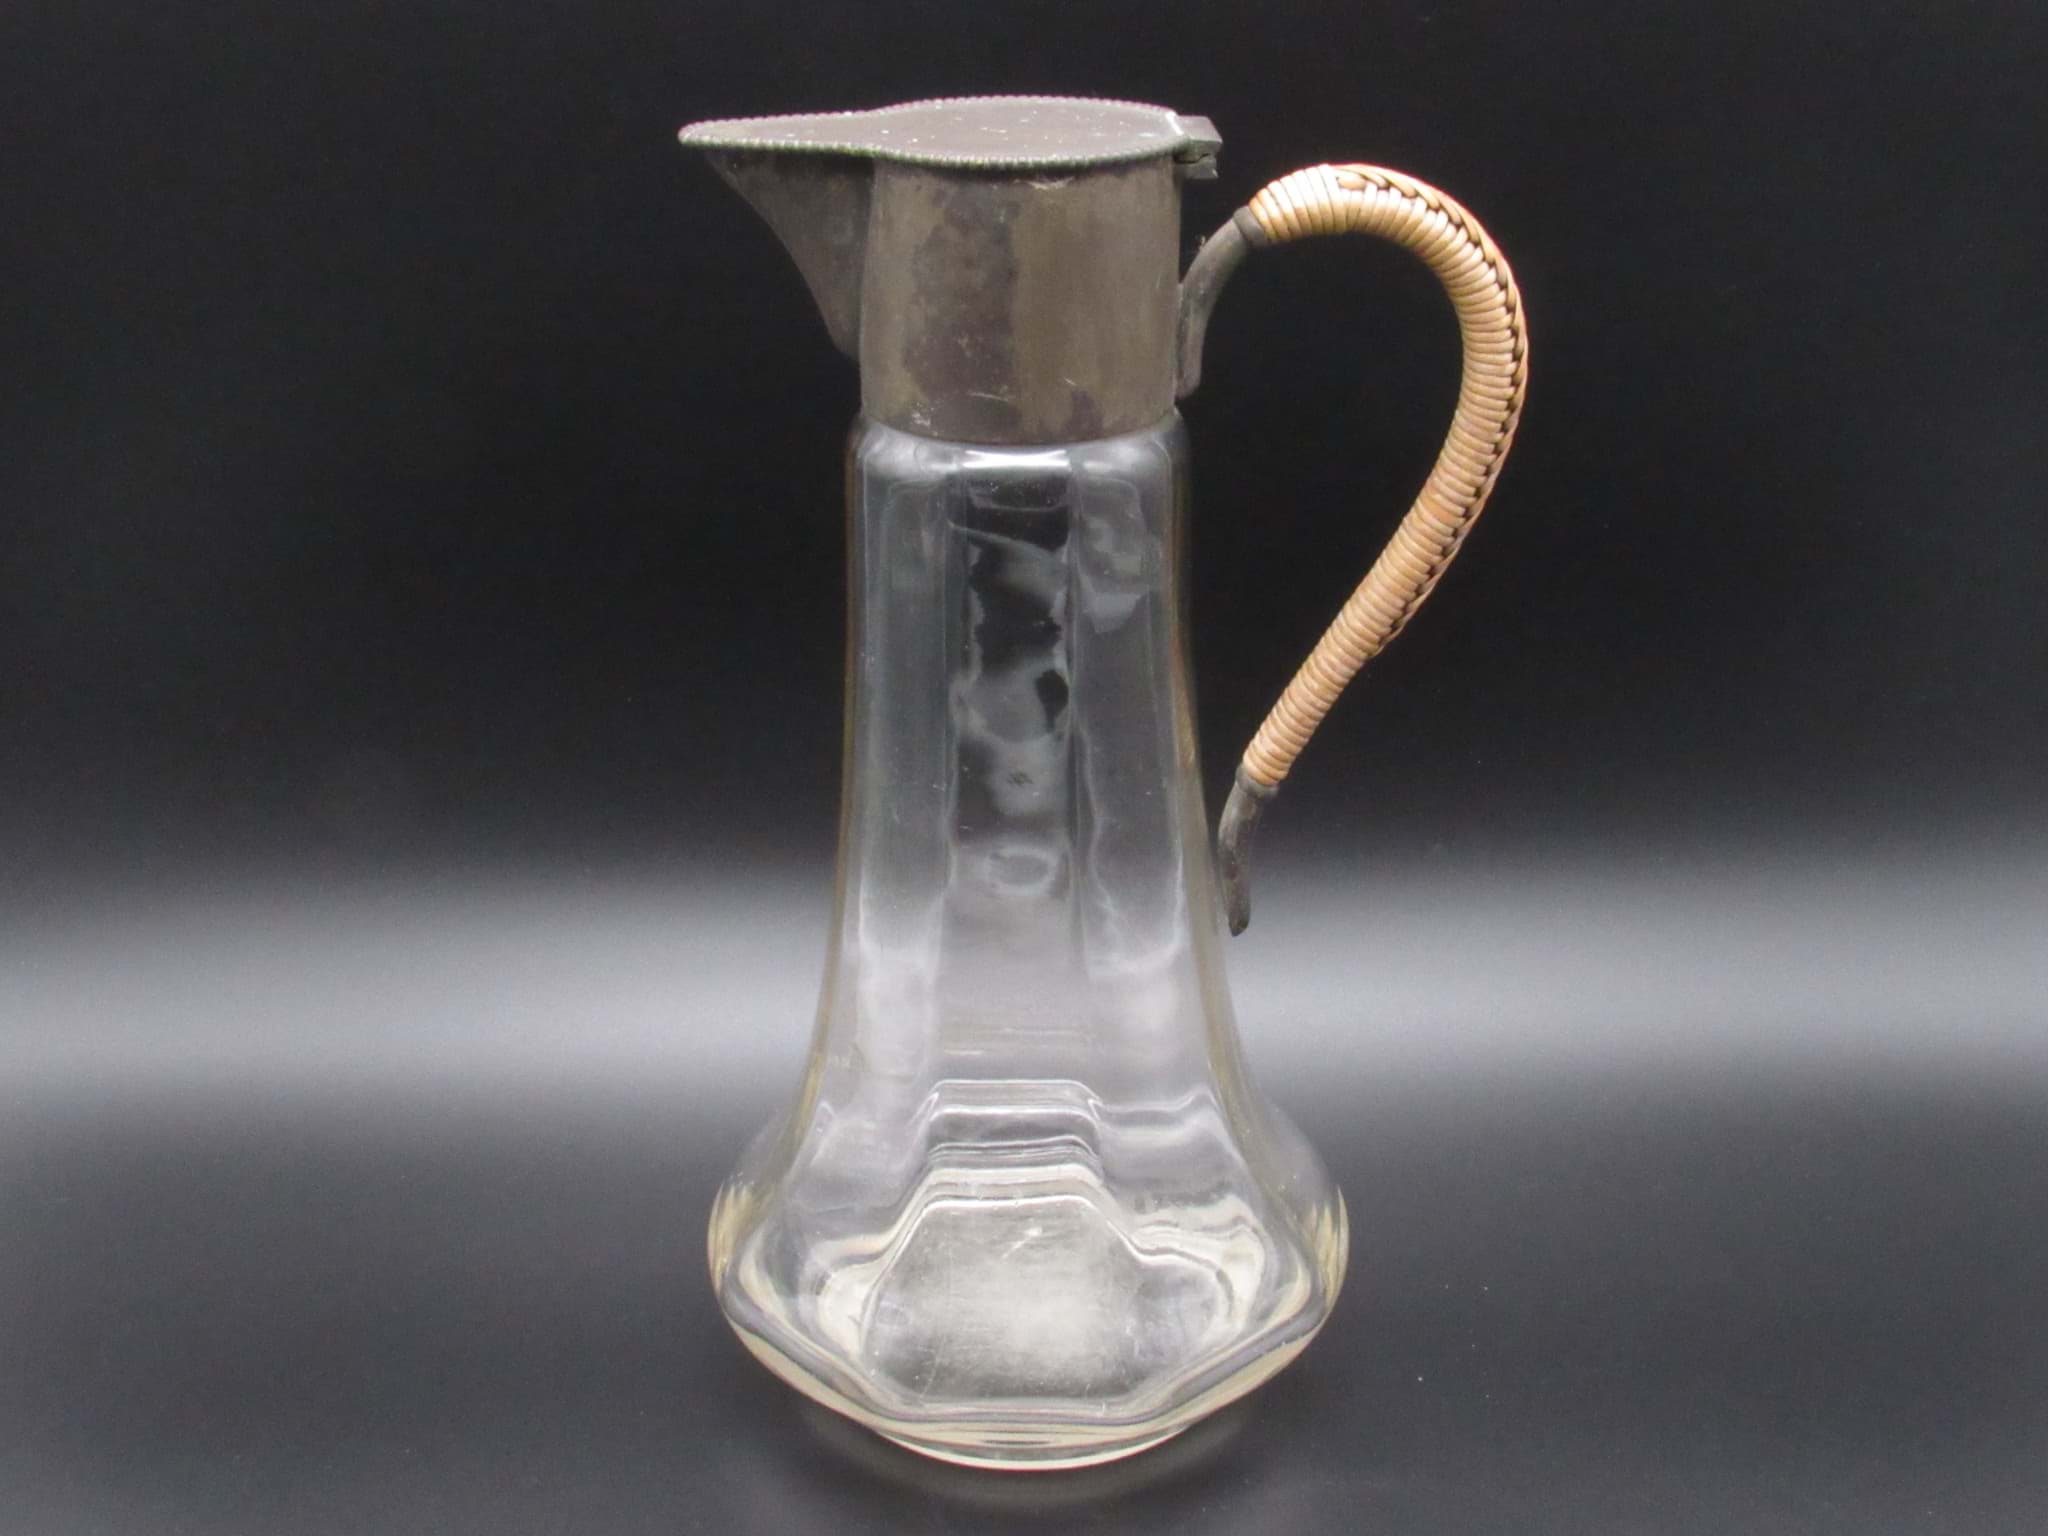 Picture of Kalte Ente / Schankkanne Glas mit Metallmontur, um 1930, Sammlerstück